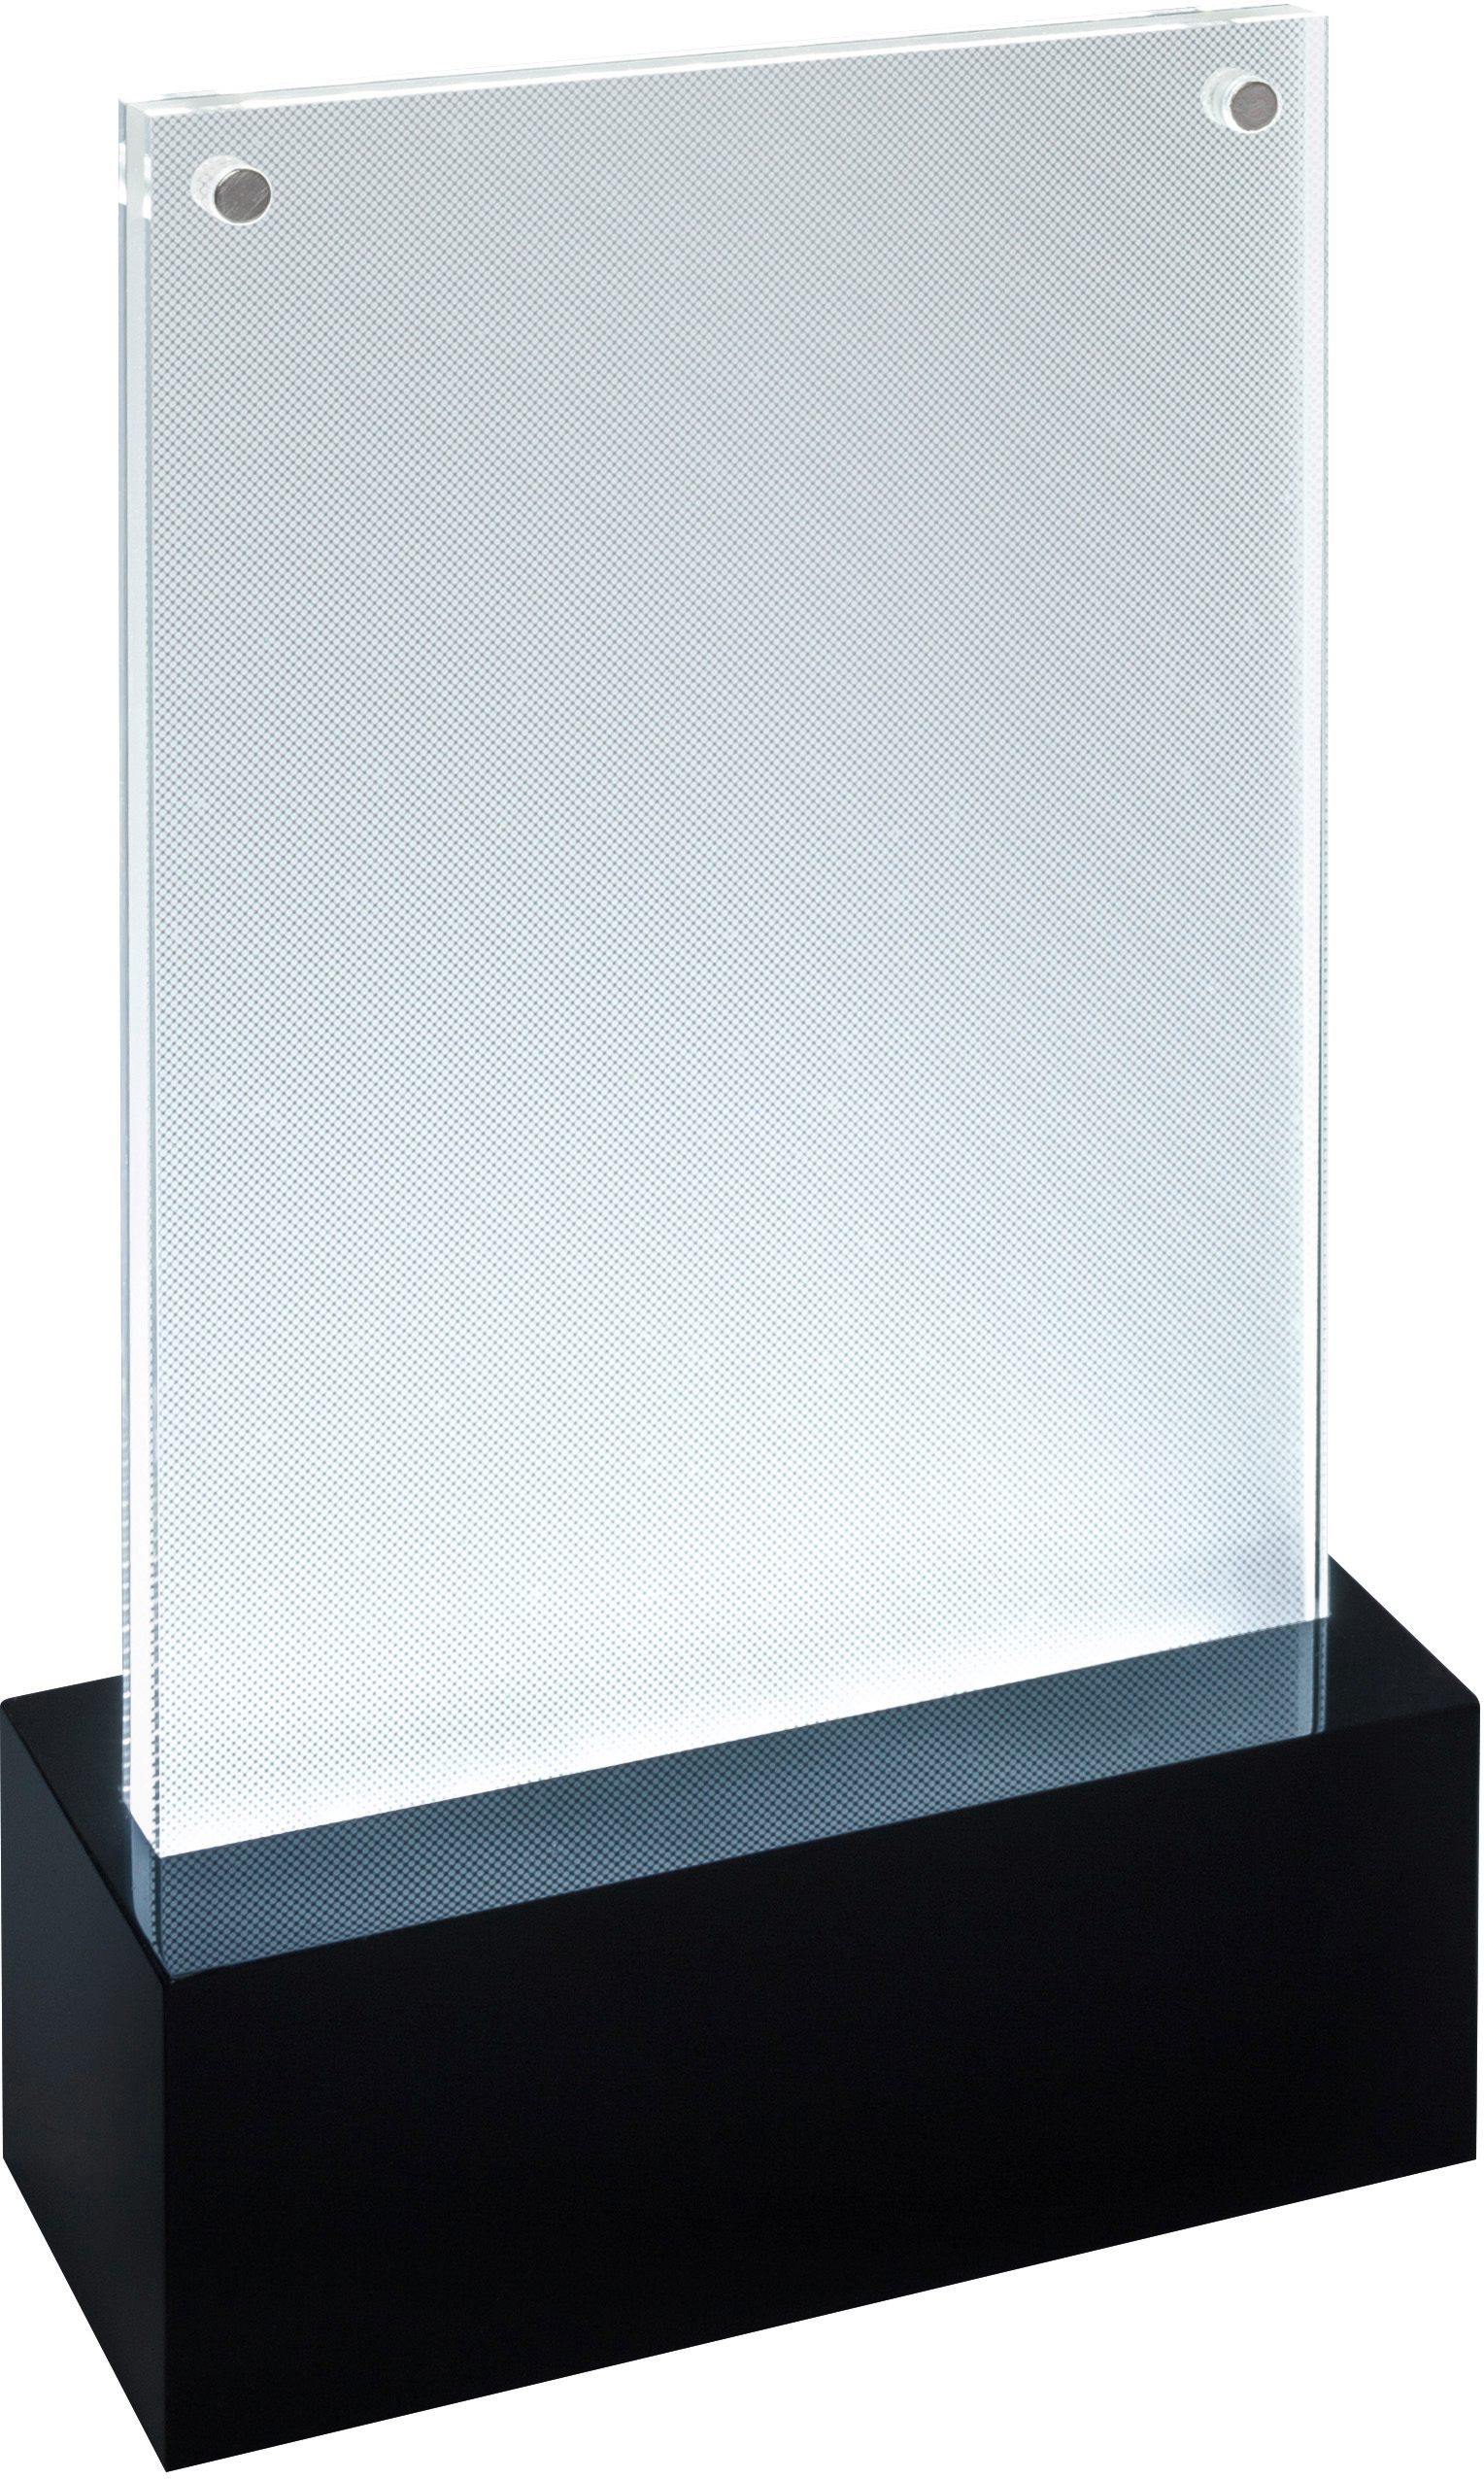 SIGEL LED présentoire table A6 TA423 250h 116x192x46mm